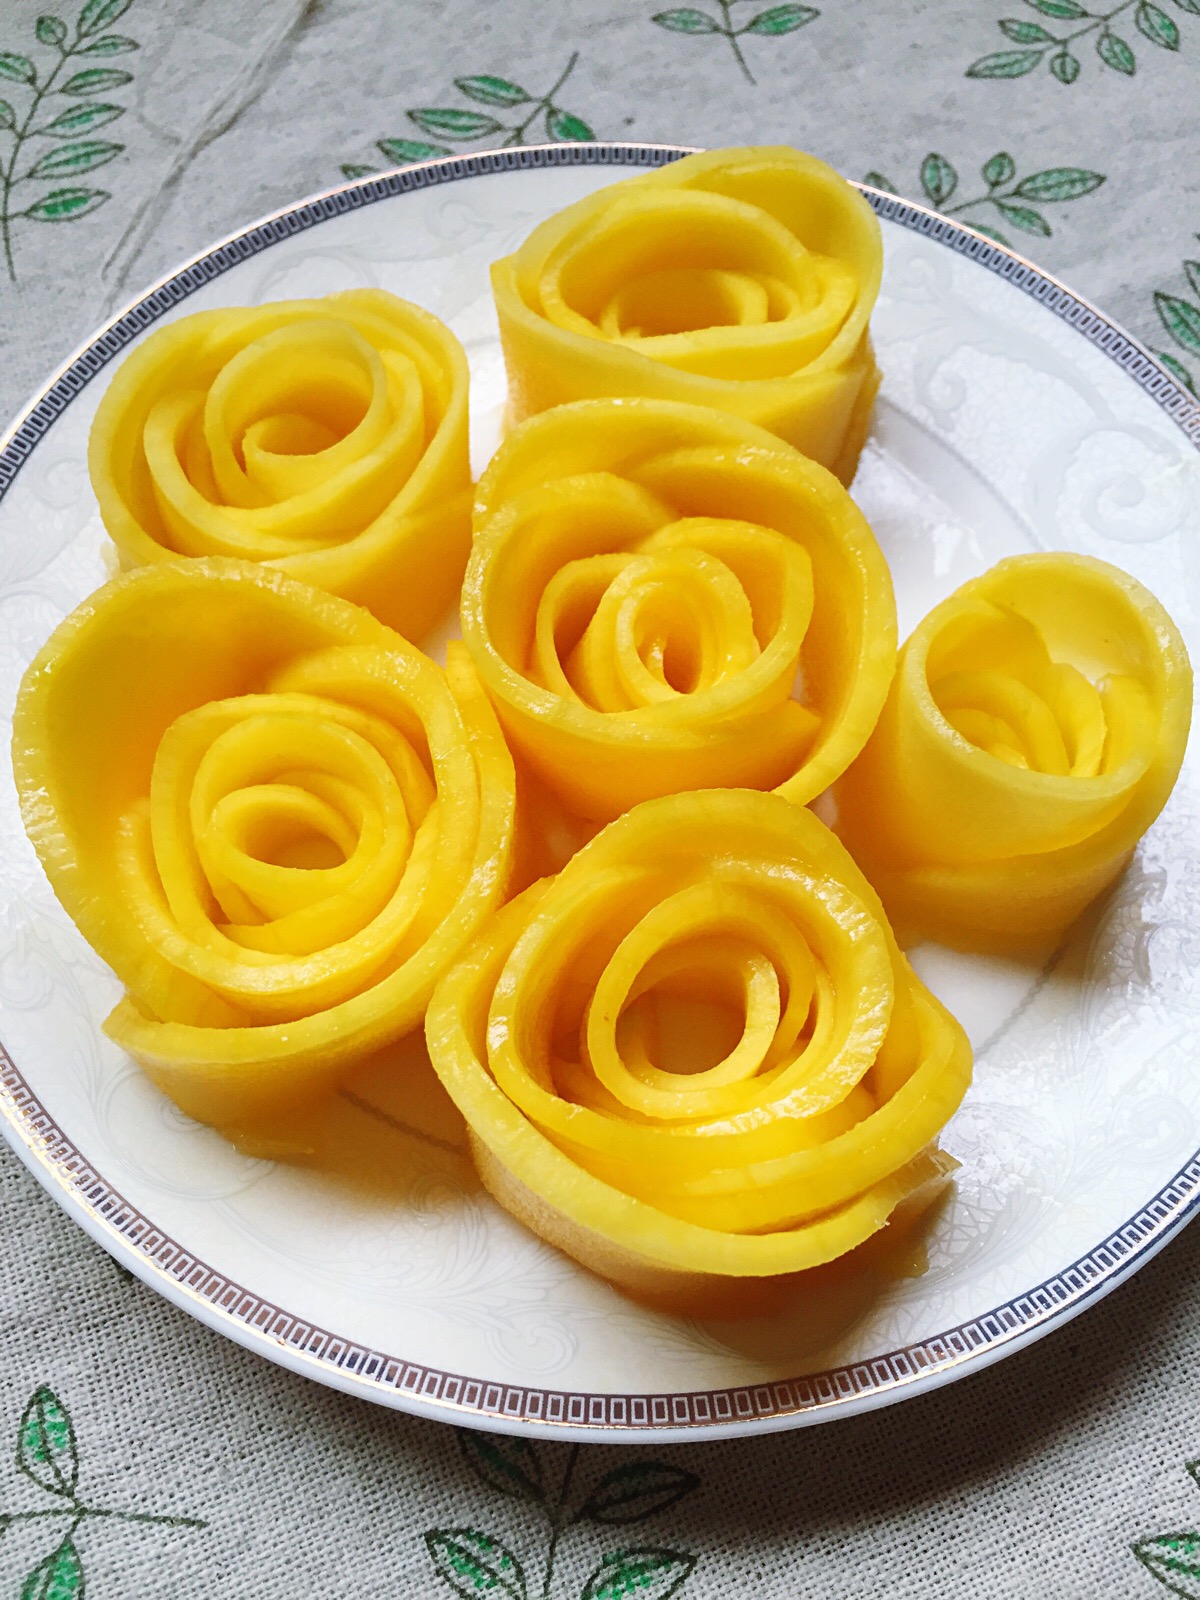 芒果的切法之二,玫瑰芒果造型美丽,适合做甜点装饰